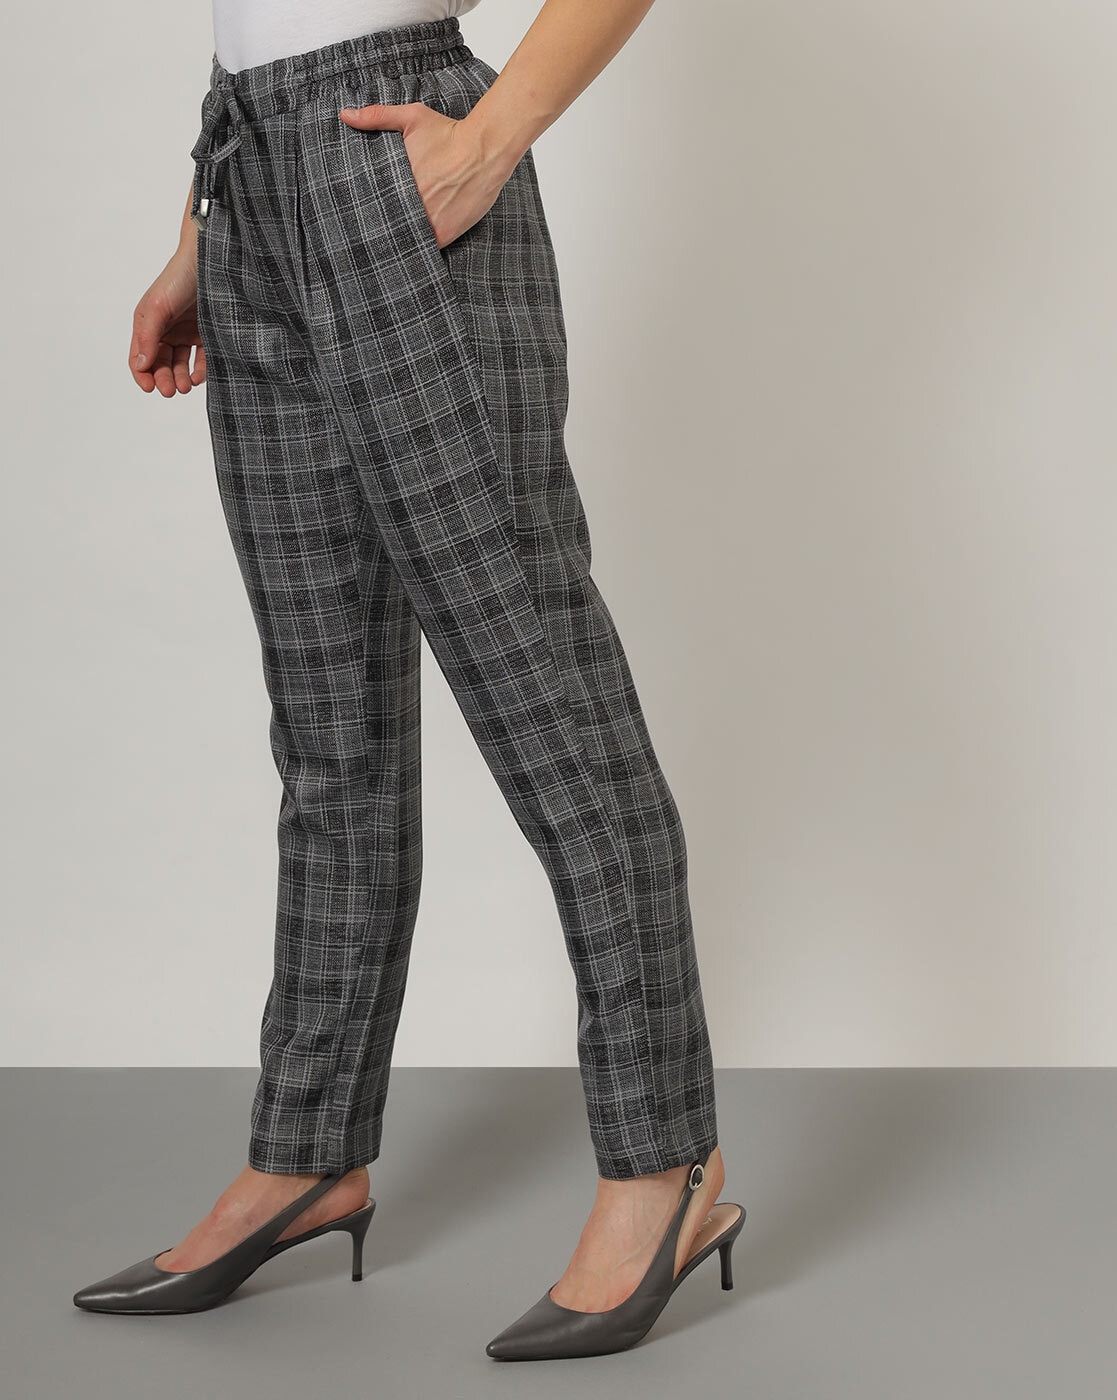 Trousers flannel grey  shop online  Women  FRANKEN  Cie